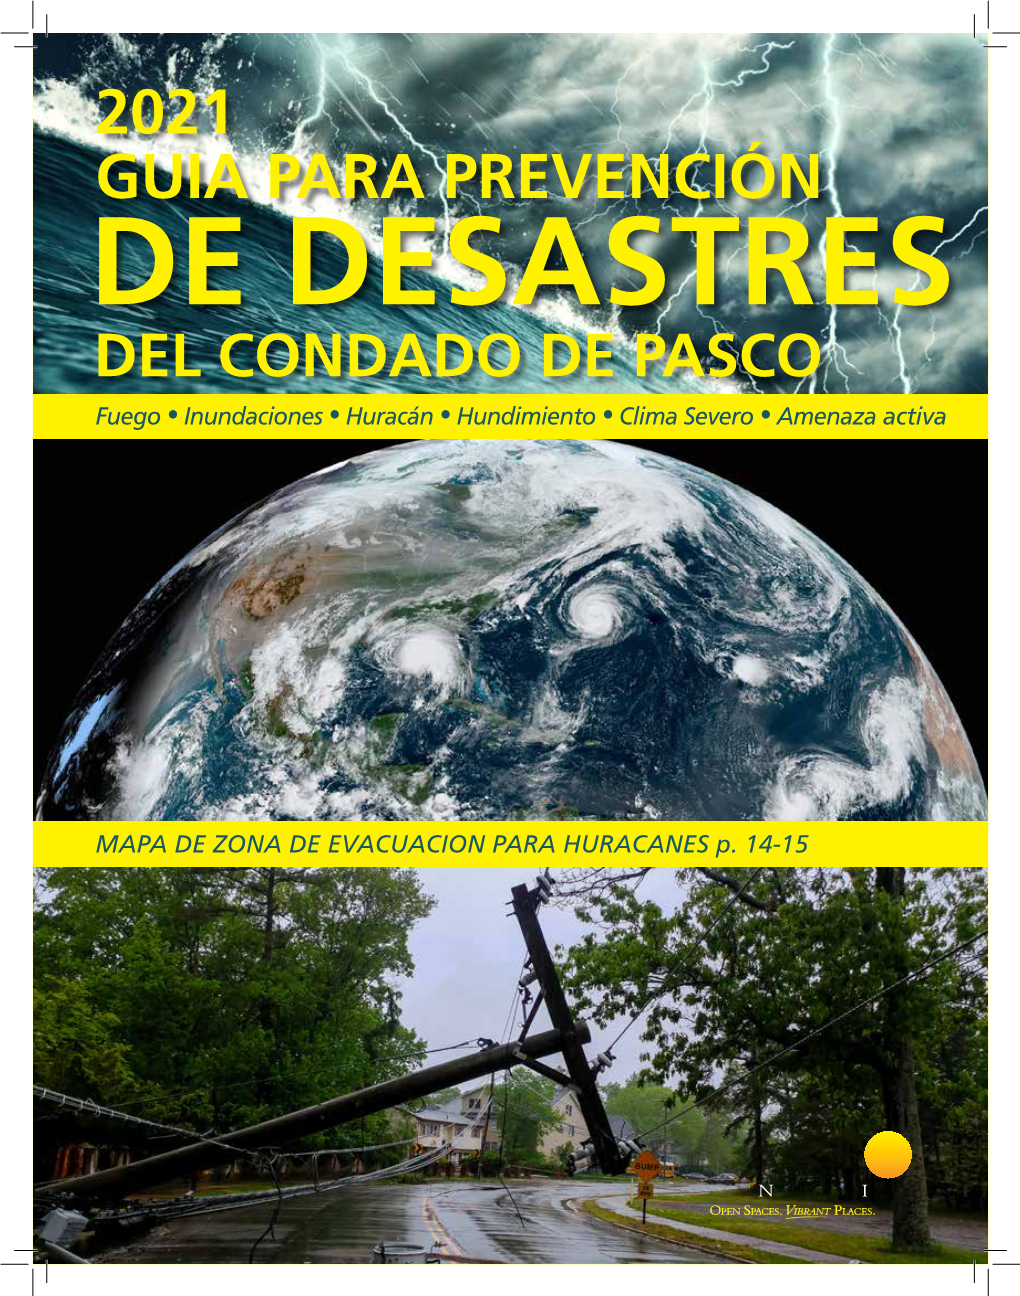 2021 Guia Para Prevencion De Desastres Del Condado De Pasco